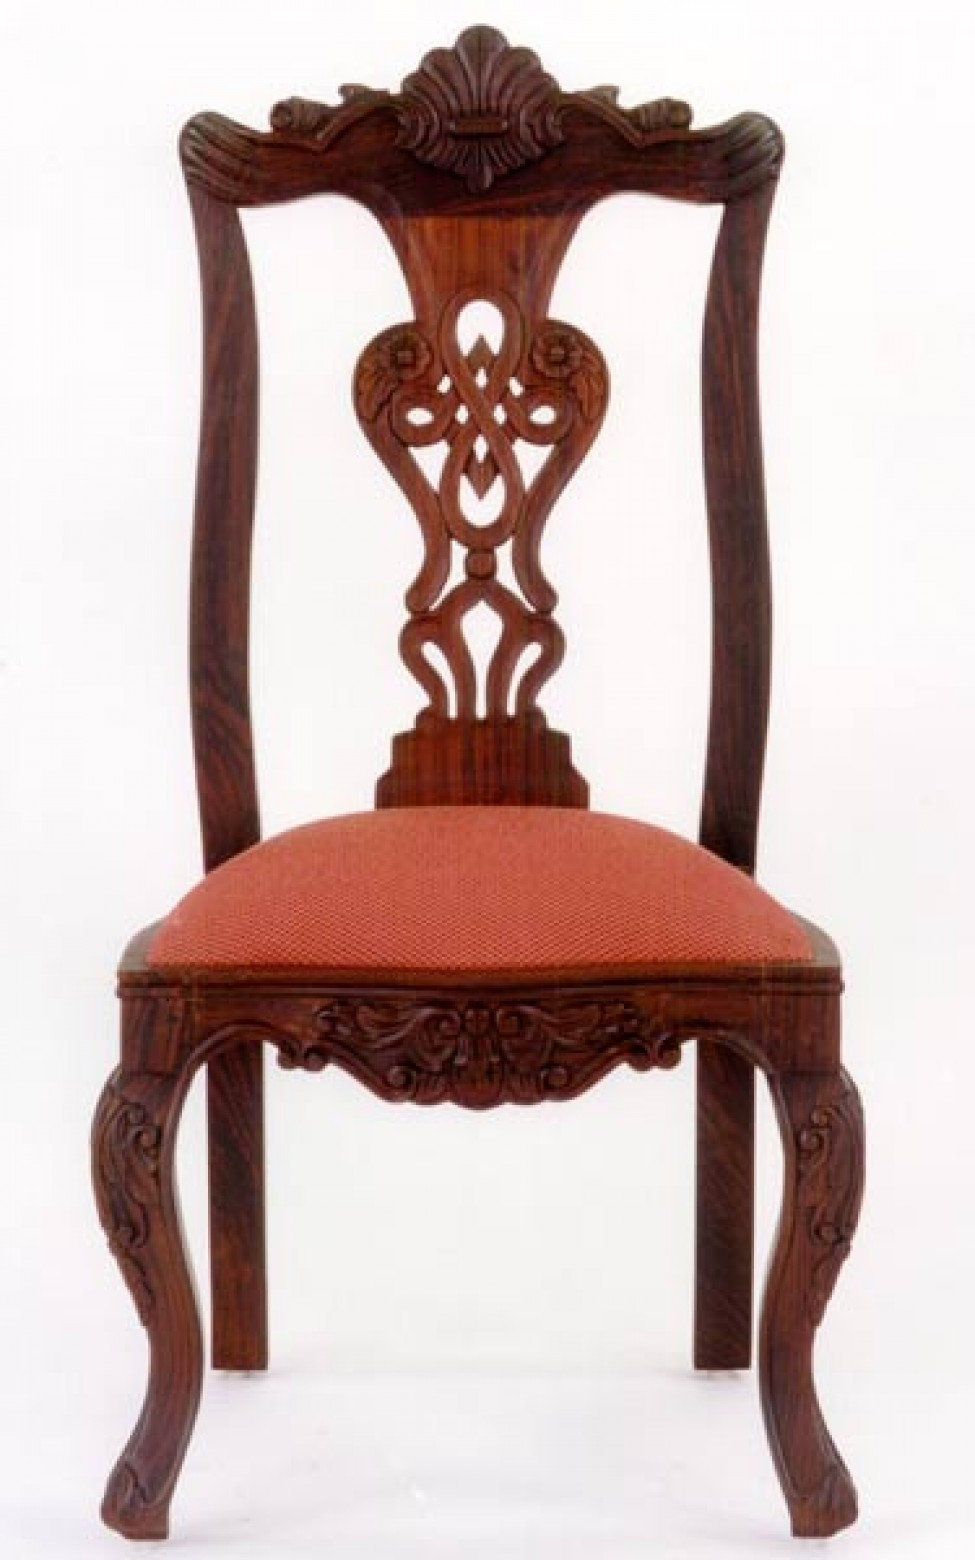 Vasco Chair